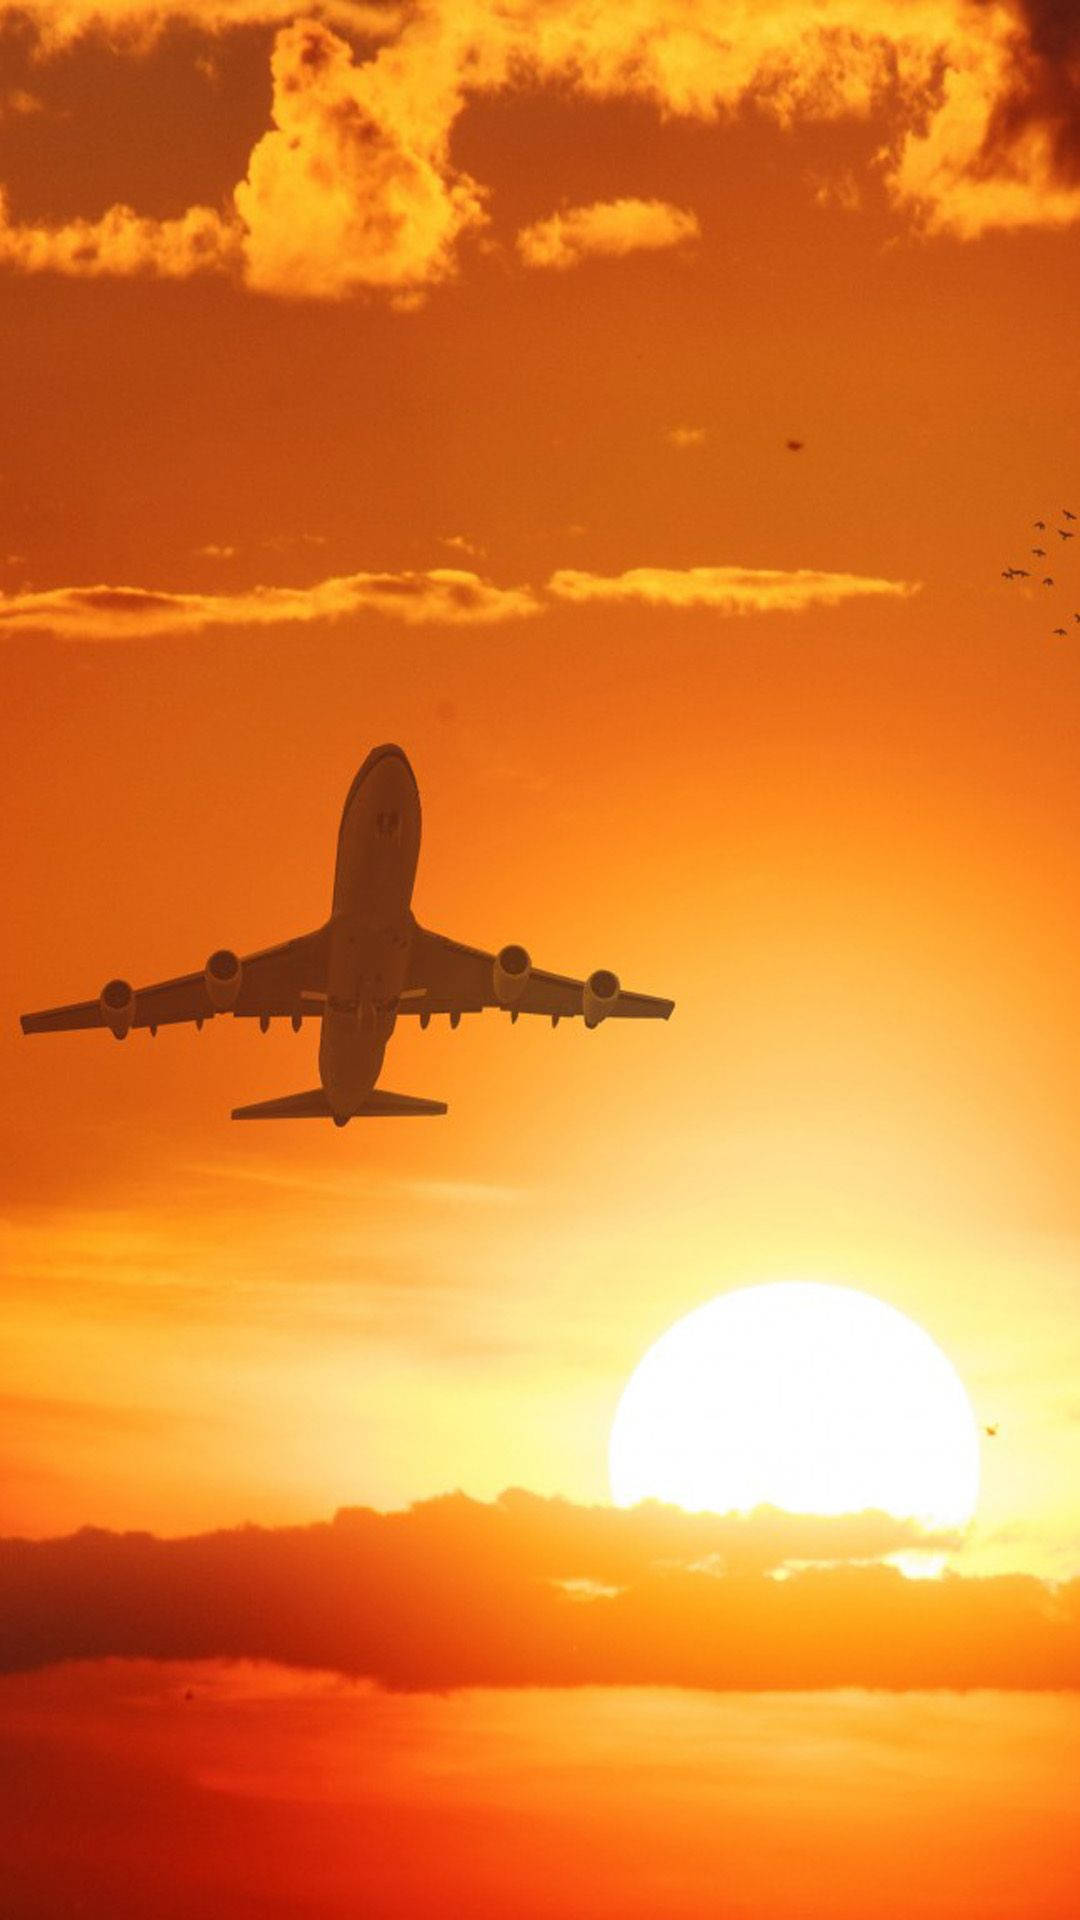 Silhouetteeines Sonnenuntergangs Mit Flugzeug - Android Wallpaper